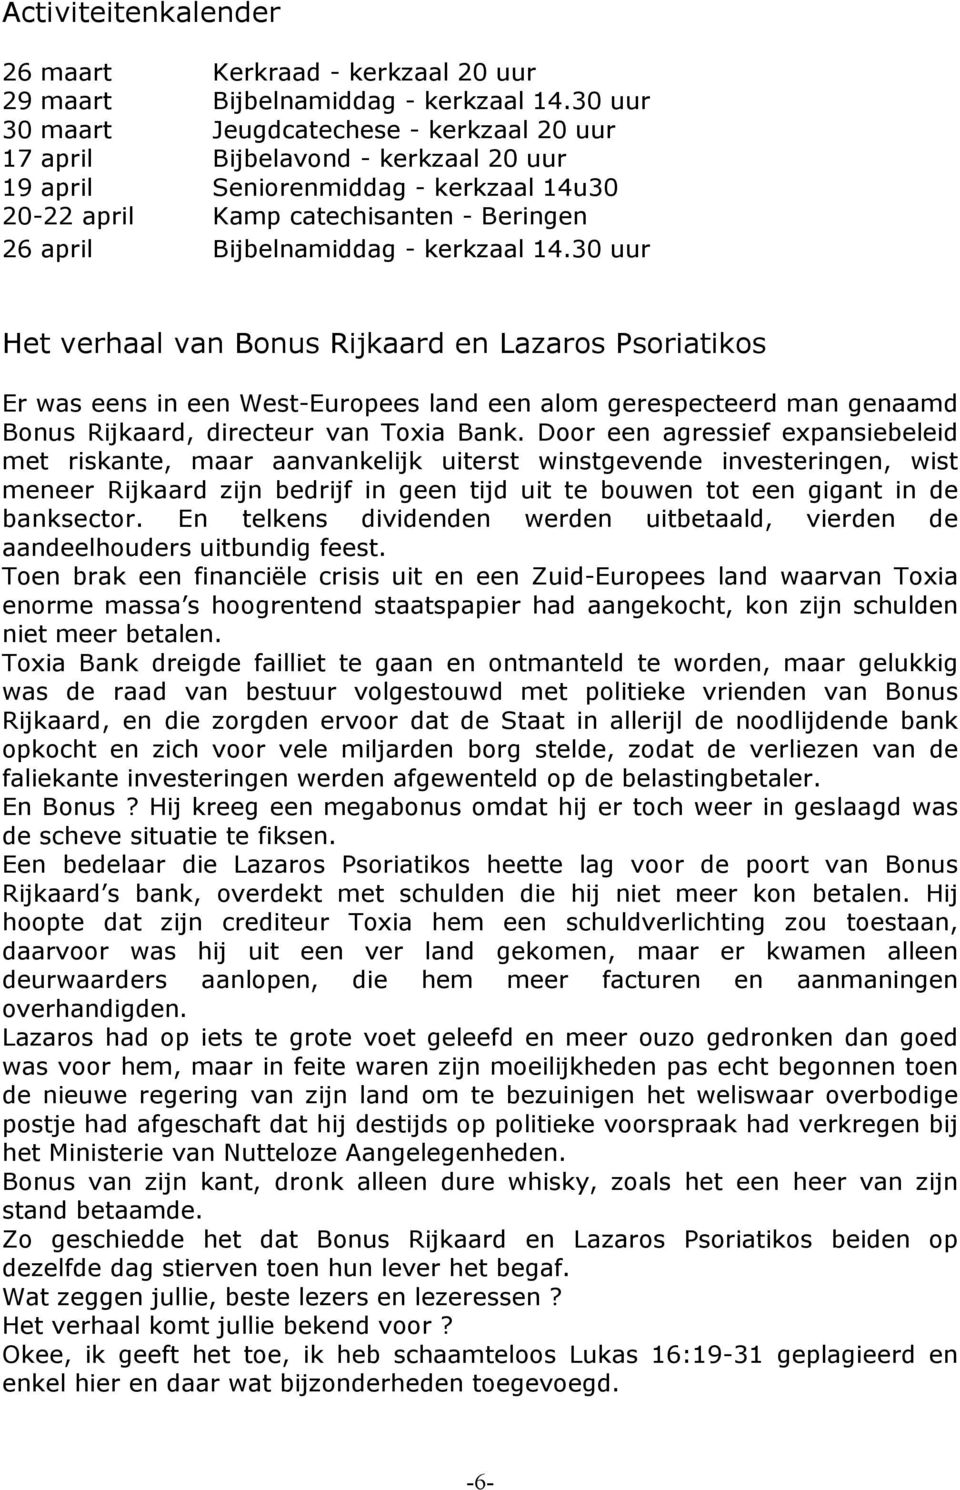 kerkzaal 14.30 uur Het verhaal van Bonus Rijkaard en Lazaros Psoriatikos Er was eens in een West-Europees land een alom gerespecteerd man genaamd Bonus Rijkaard, directeur van Toxia Bank.